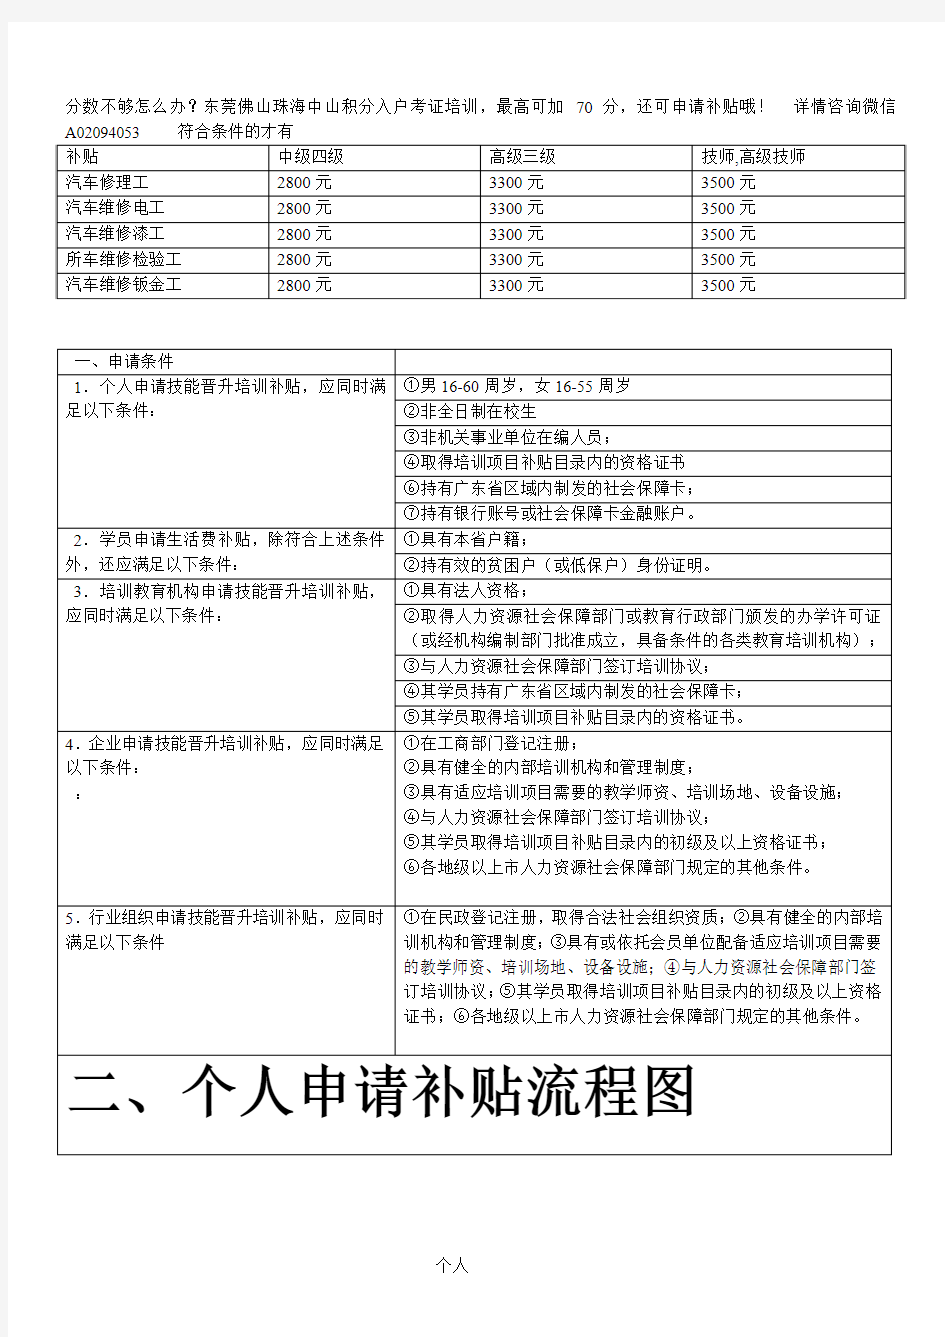 广东省深圳市职业资格证个人申请补贴流程图-技能晋升培训补贴申报指南